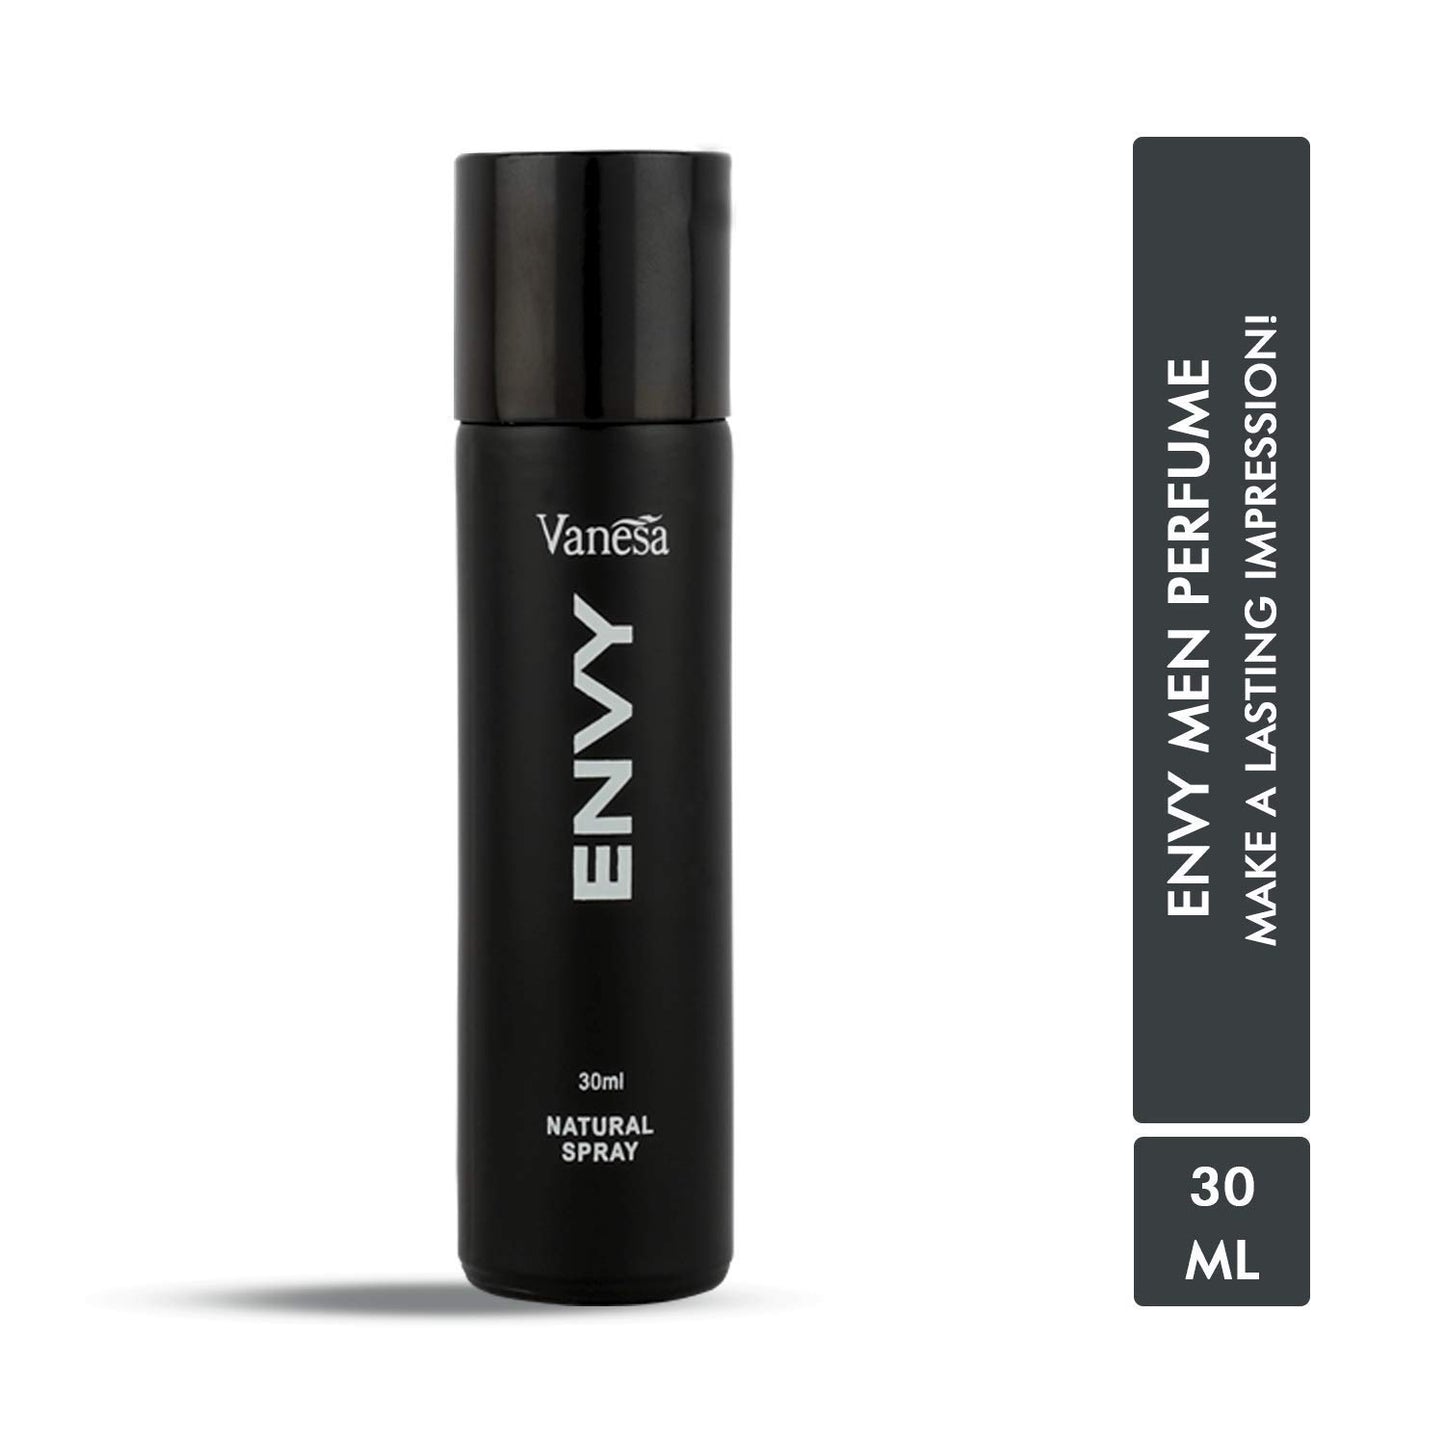 Envy Perfume For Men, 60ml (Pack of 2)